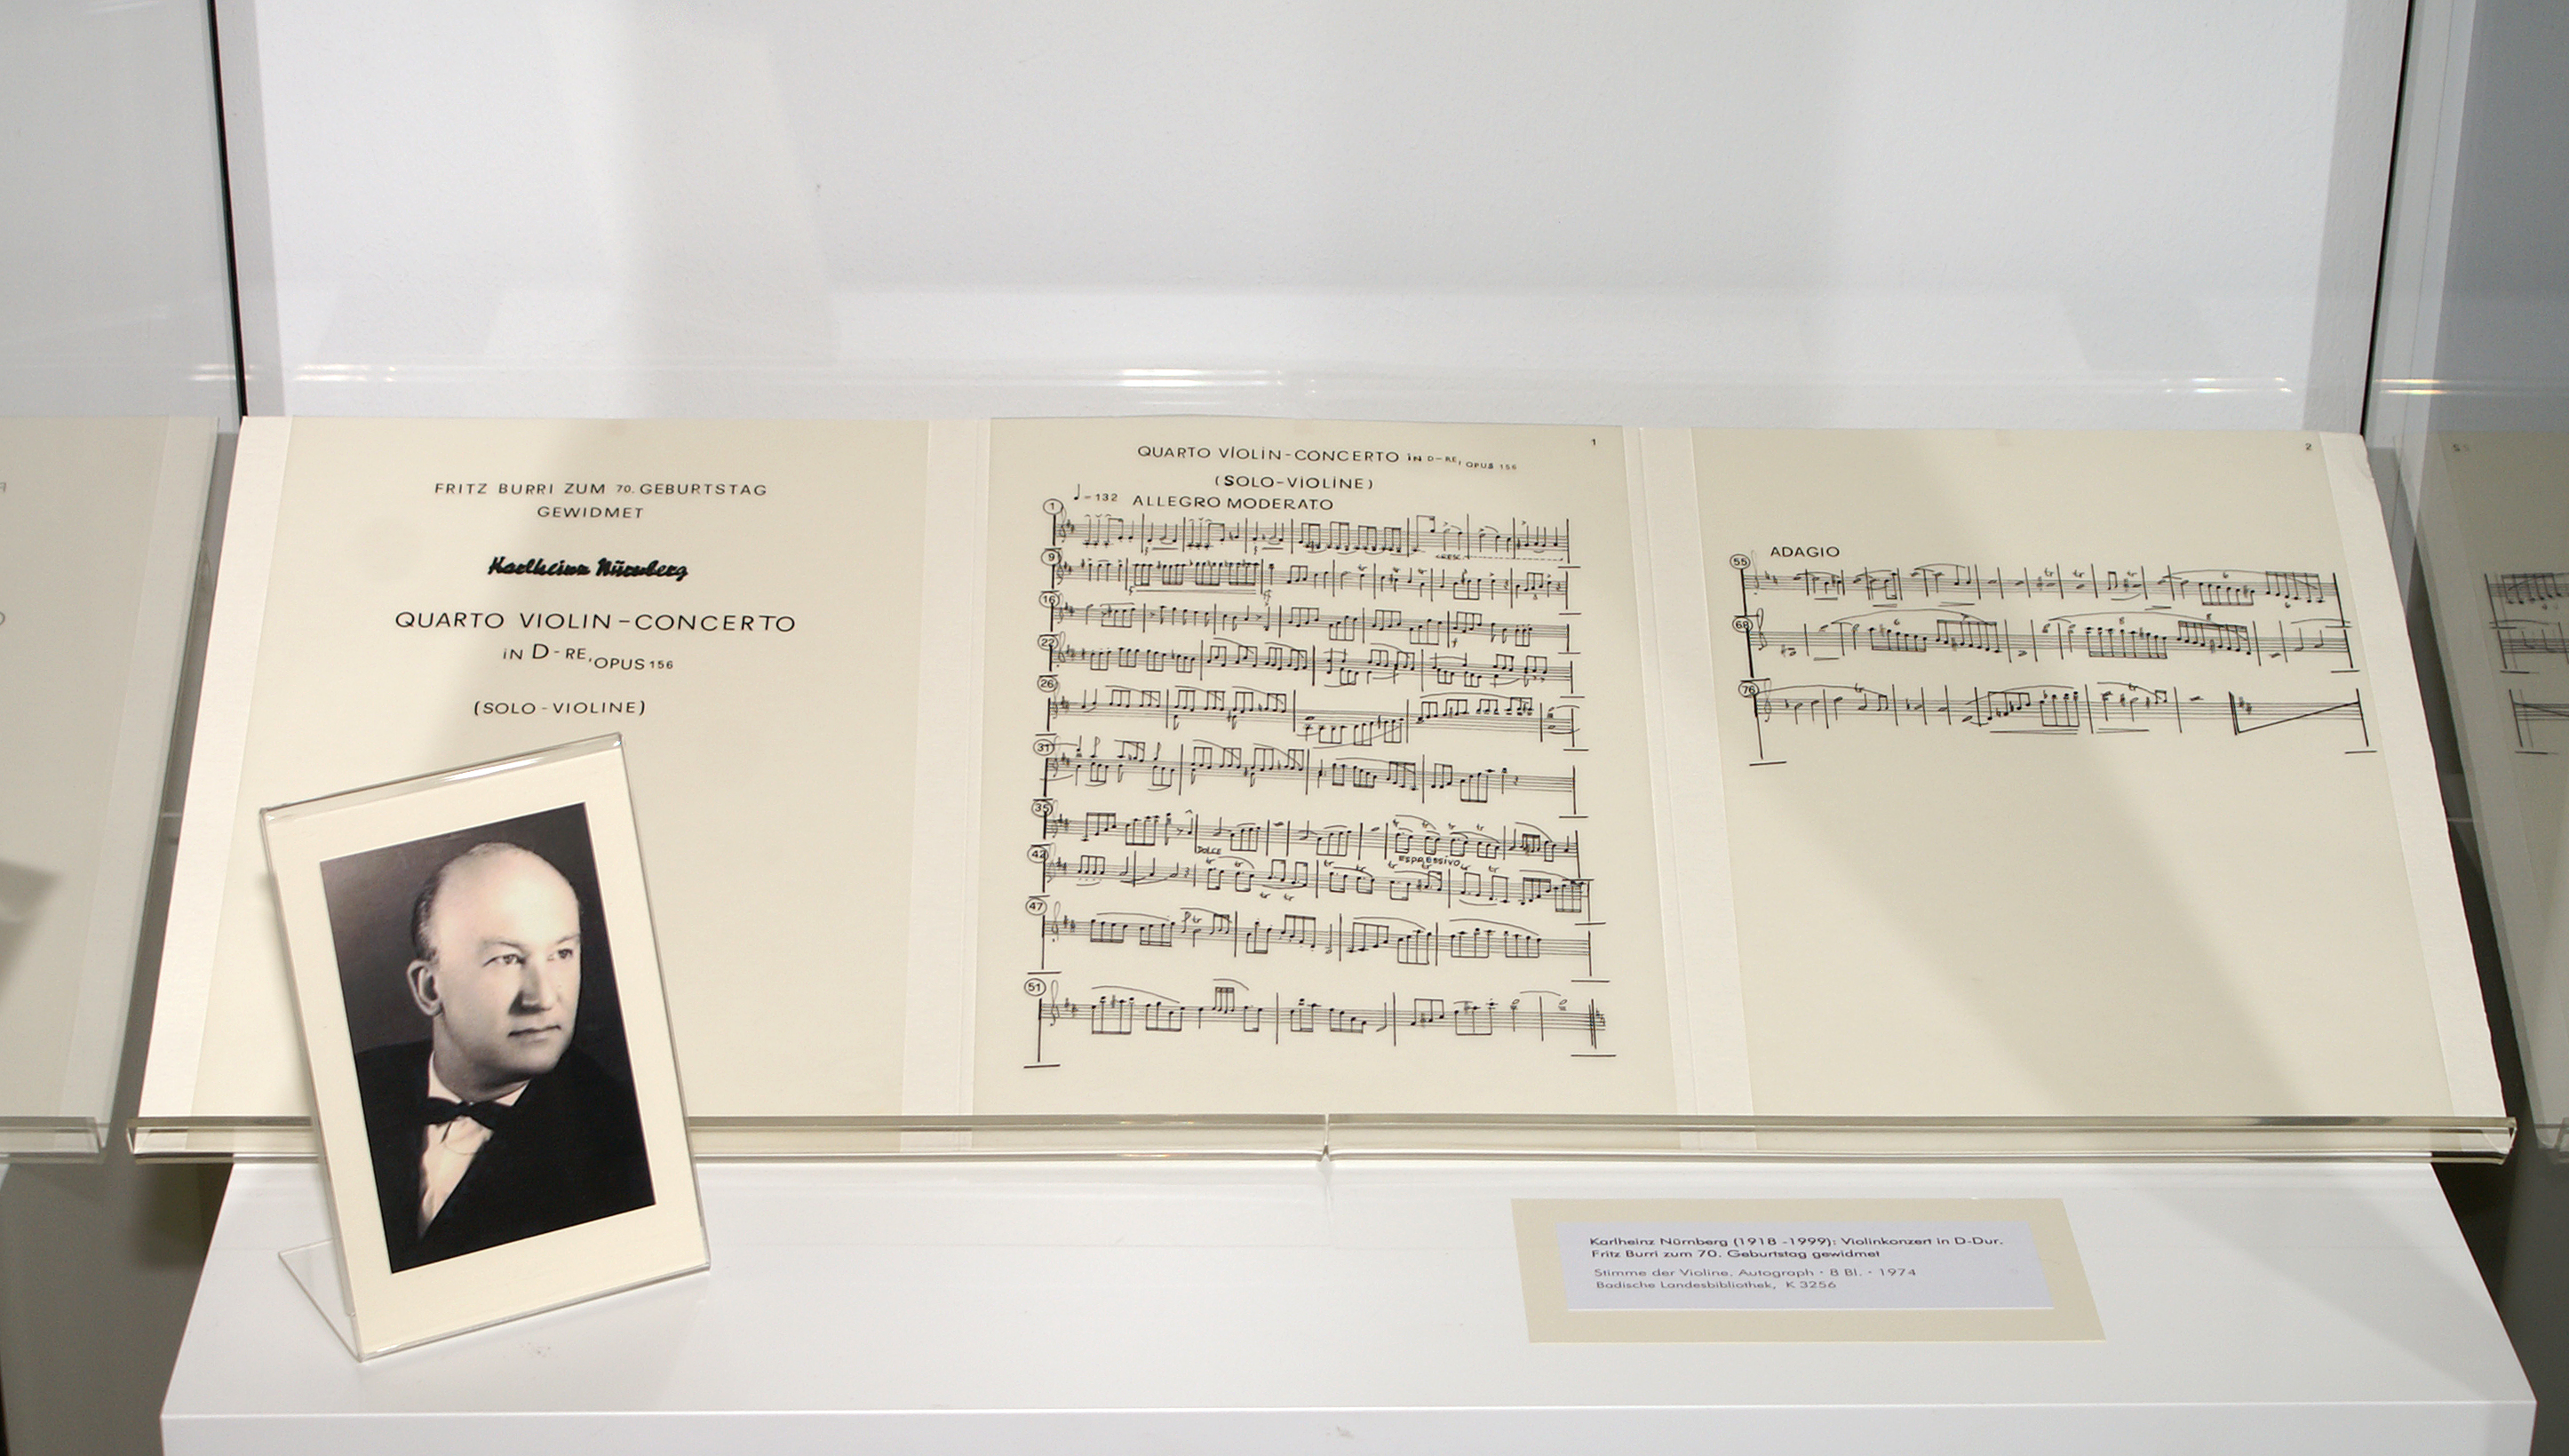 Ausgestellt ist das Violinkonzert in D-Dur und ein kleines schwarz-weiß Porträt von Karlheinz Nürnberg.